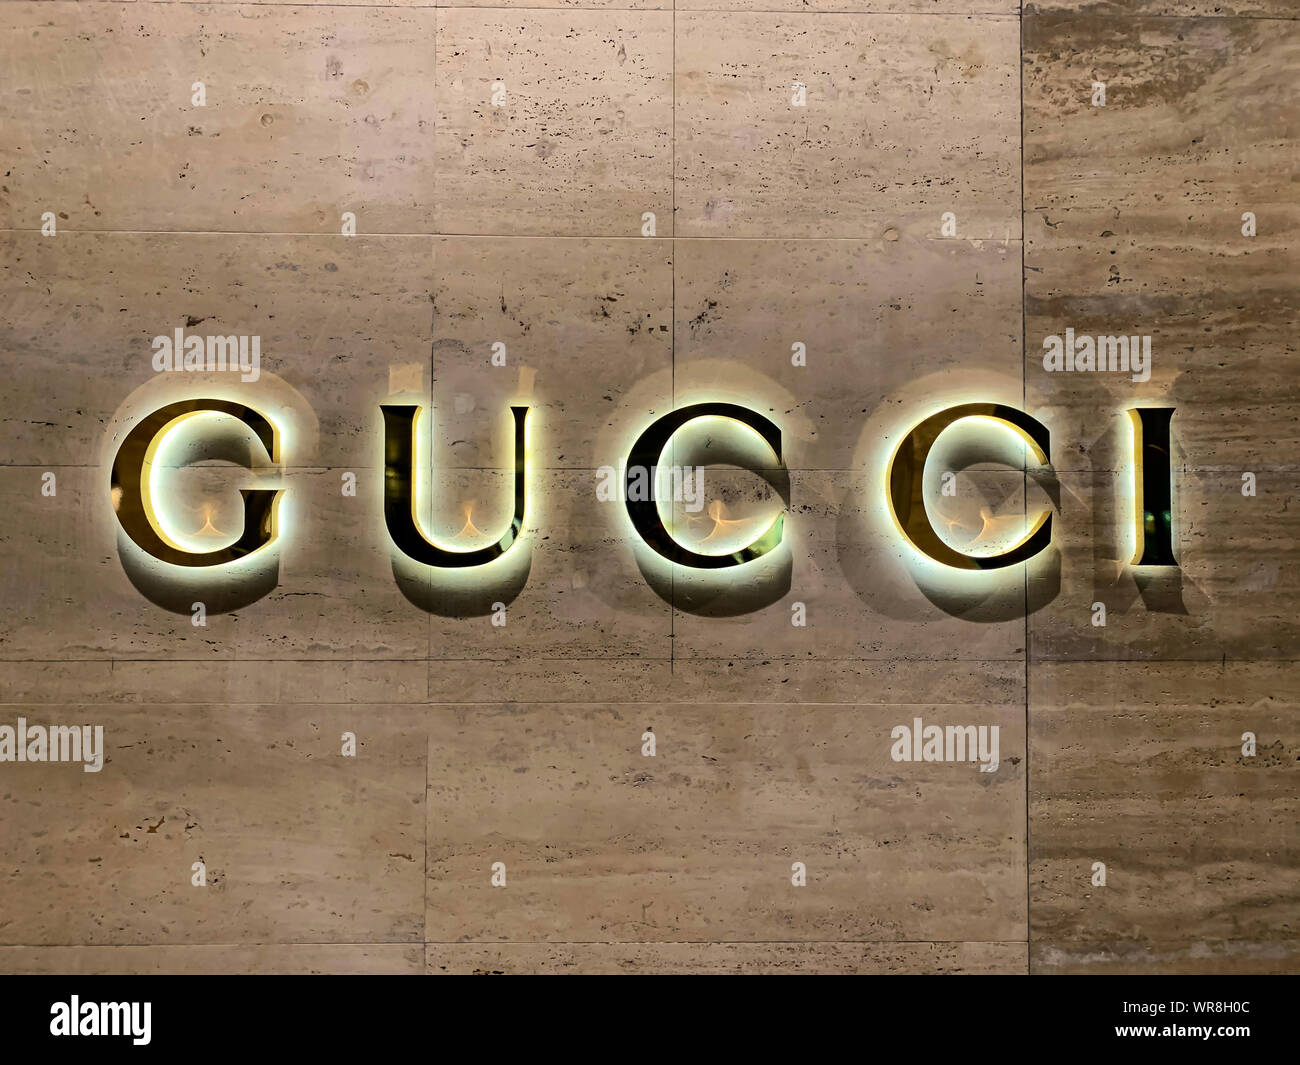 Gucci beleuchtet an der Wand in der Schweiz Stockfotografie - Alamy